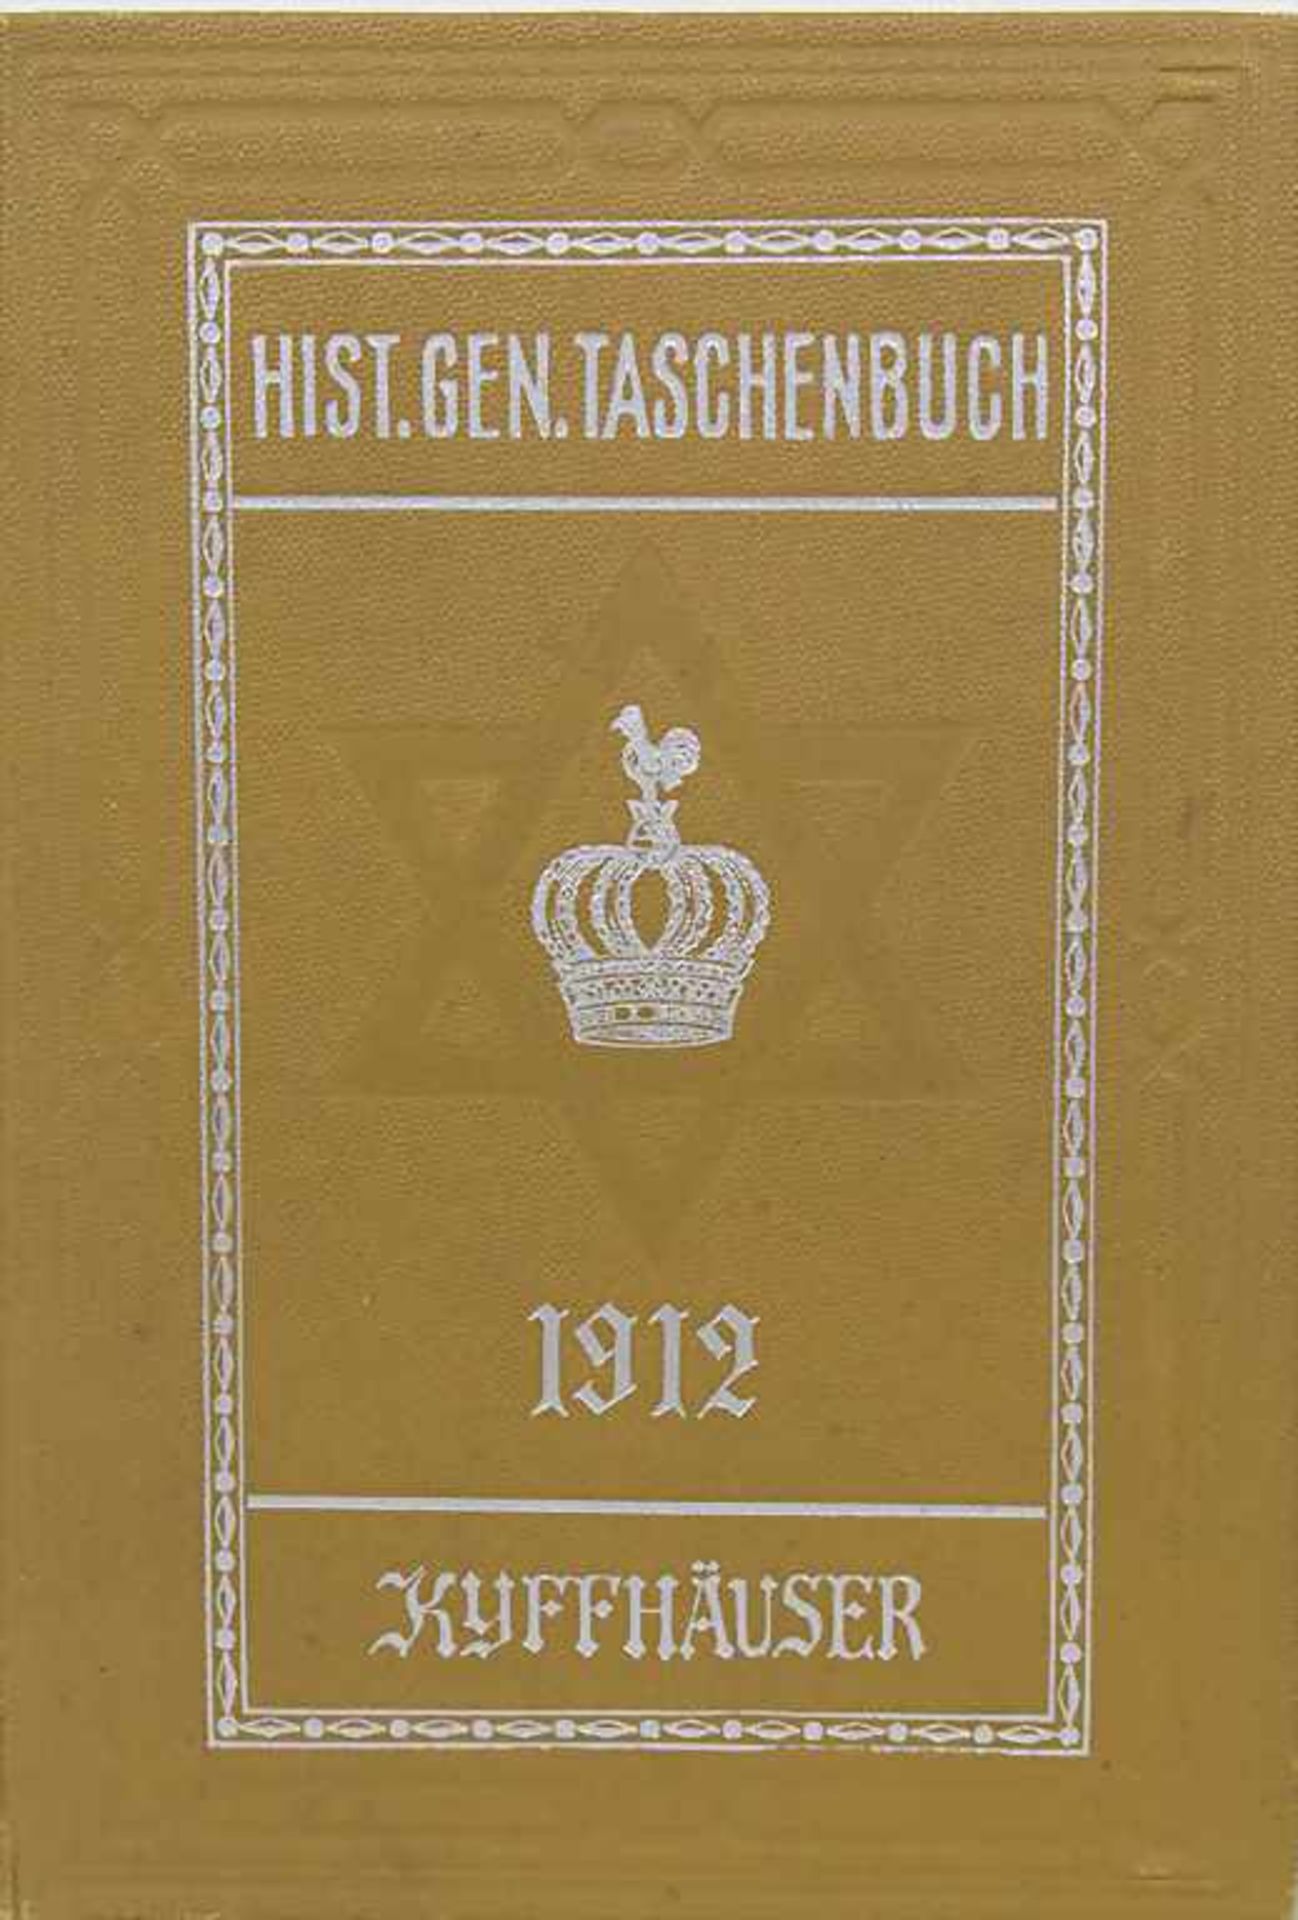 Weimarer historisch-genealoges Taschenbuch des gesamten Adels jehudäischen UrsprungesTitel: Weimarer